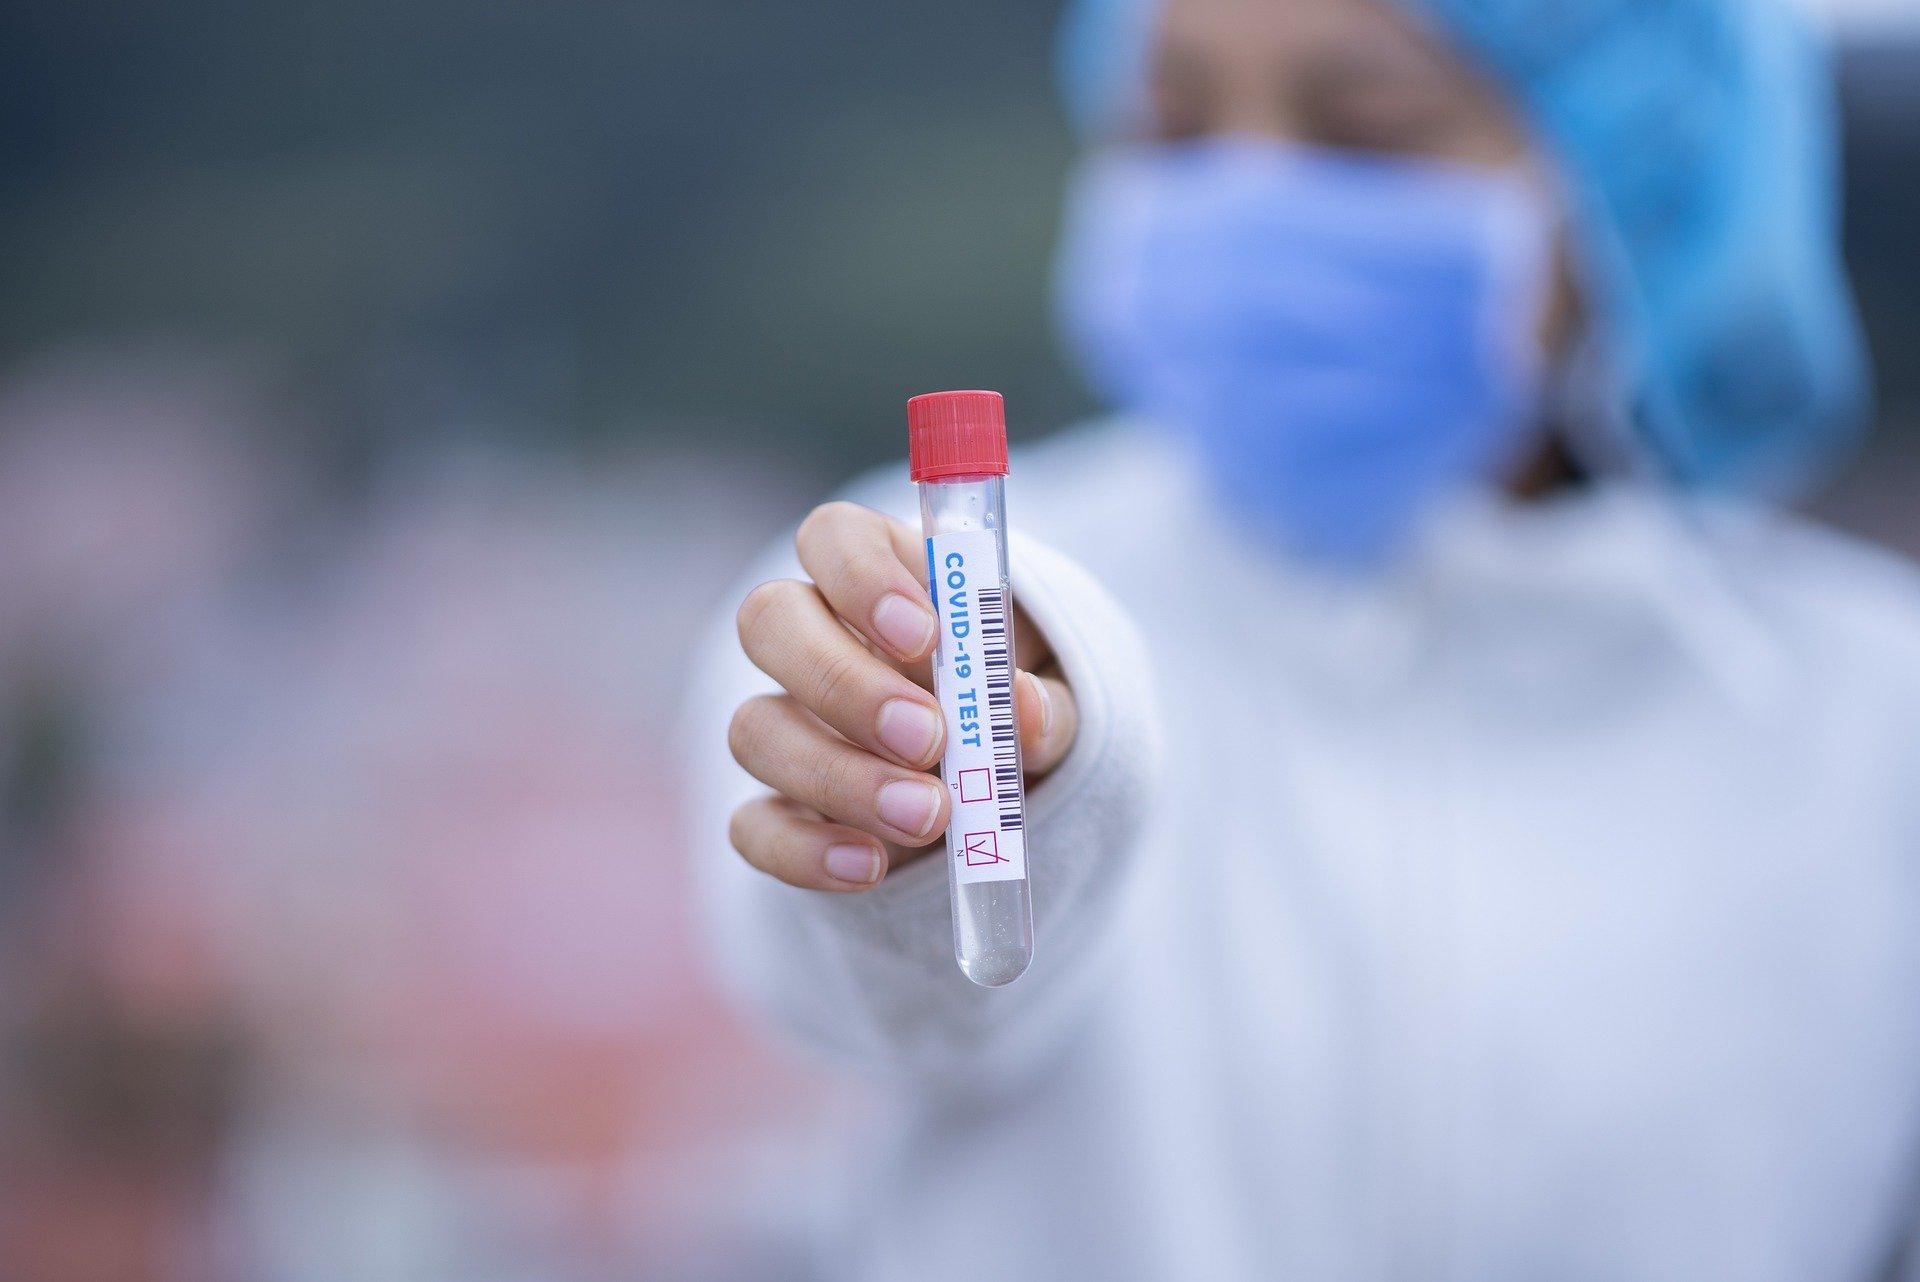 Test antygenowy w kierunku zakażenia koronawirusem SARS-CoV-2 wraz z zaświadczeniem lekarskim w języku polskim lub angielskim